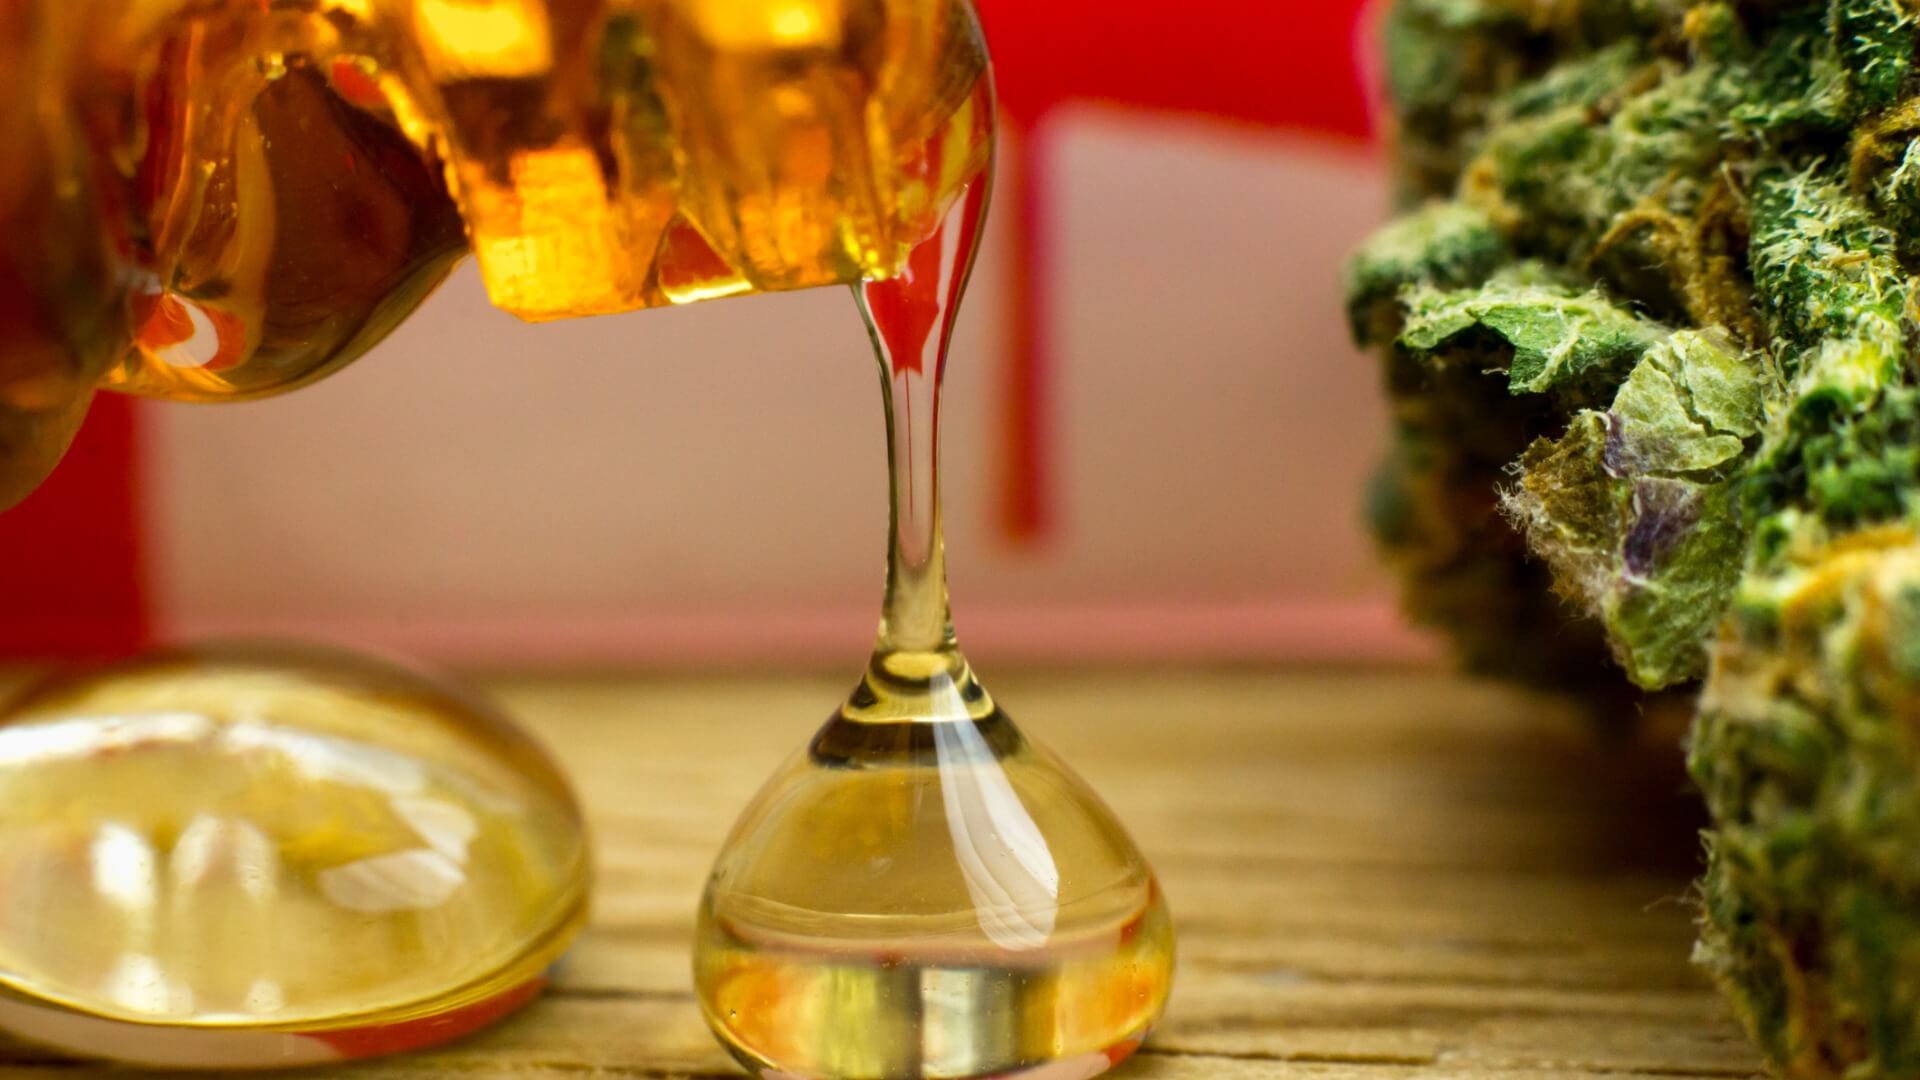 cannabis distillate next to a nug